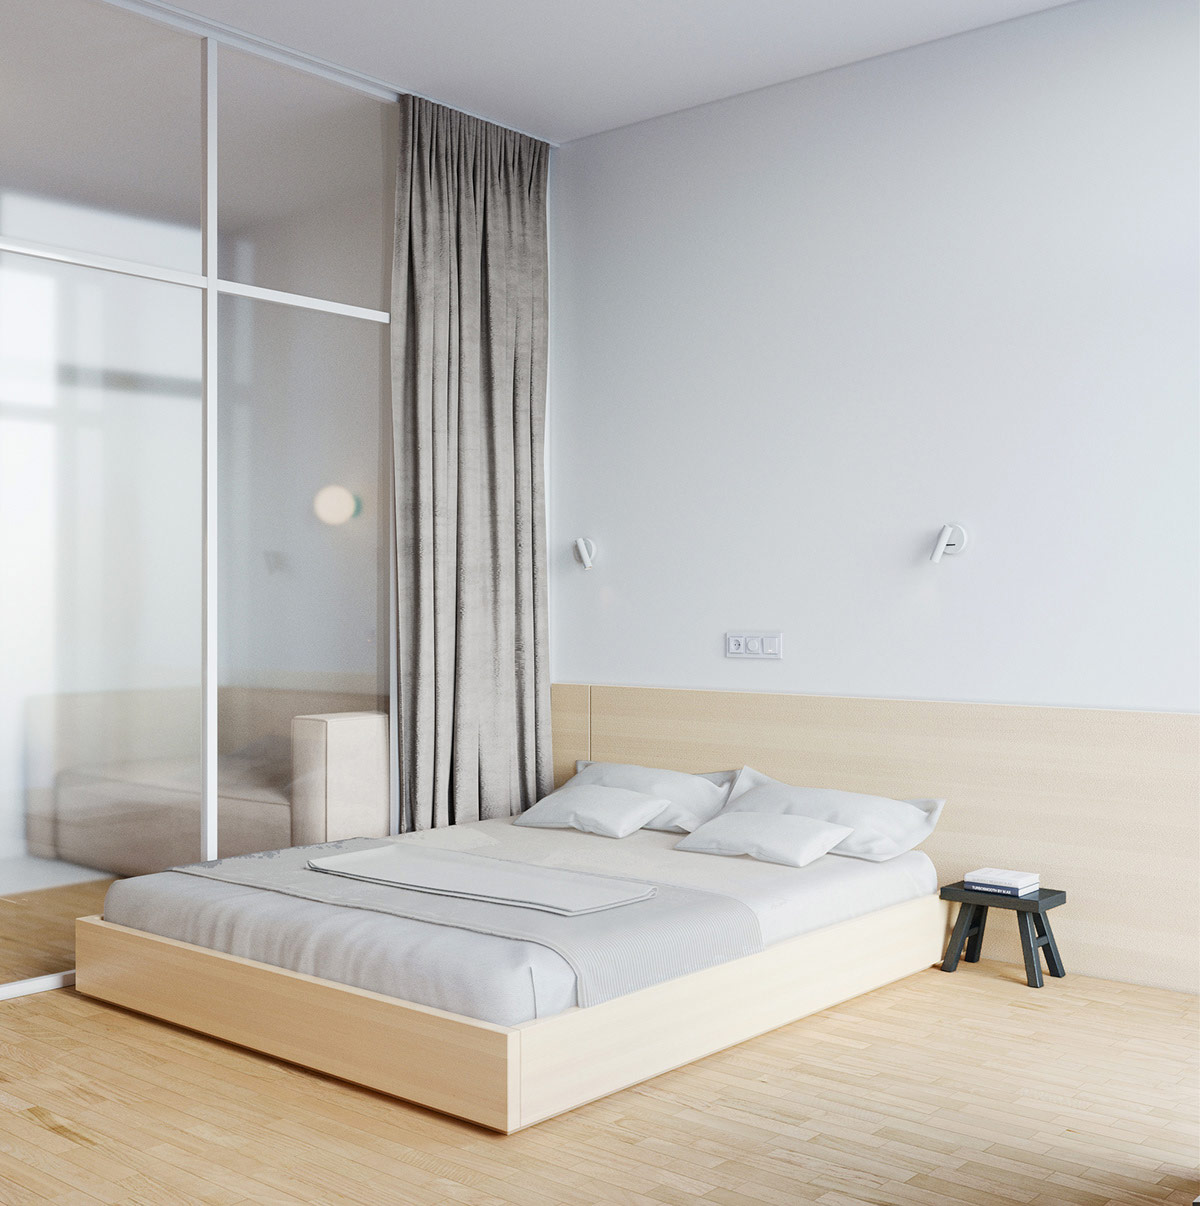 phòng ngủ với giường gỗ, tấm ván gỗ đầu giường, cửa kính trượt, rèm màu xám